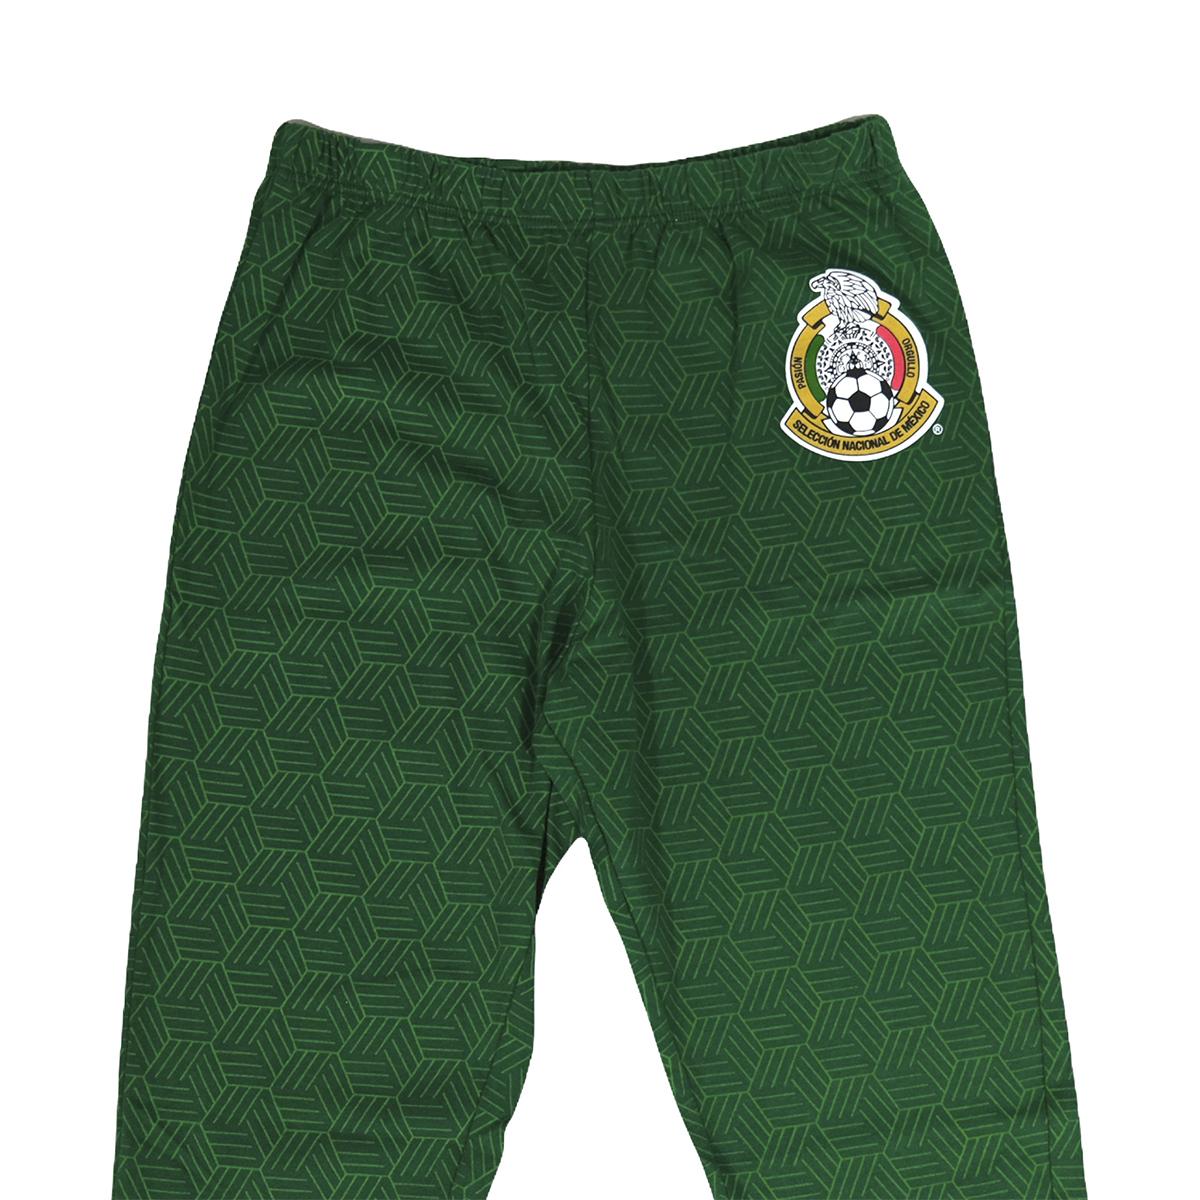 Pantalón Niño Selección Nacional México Original